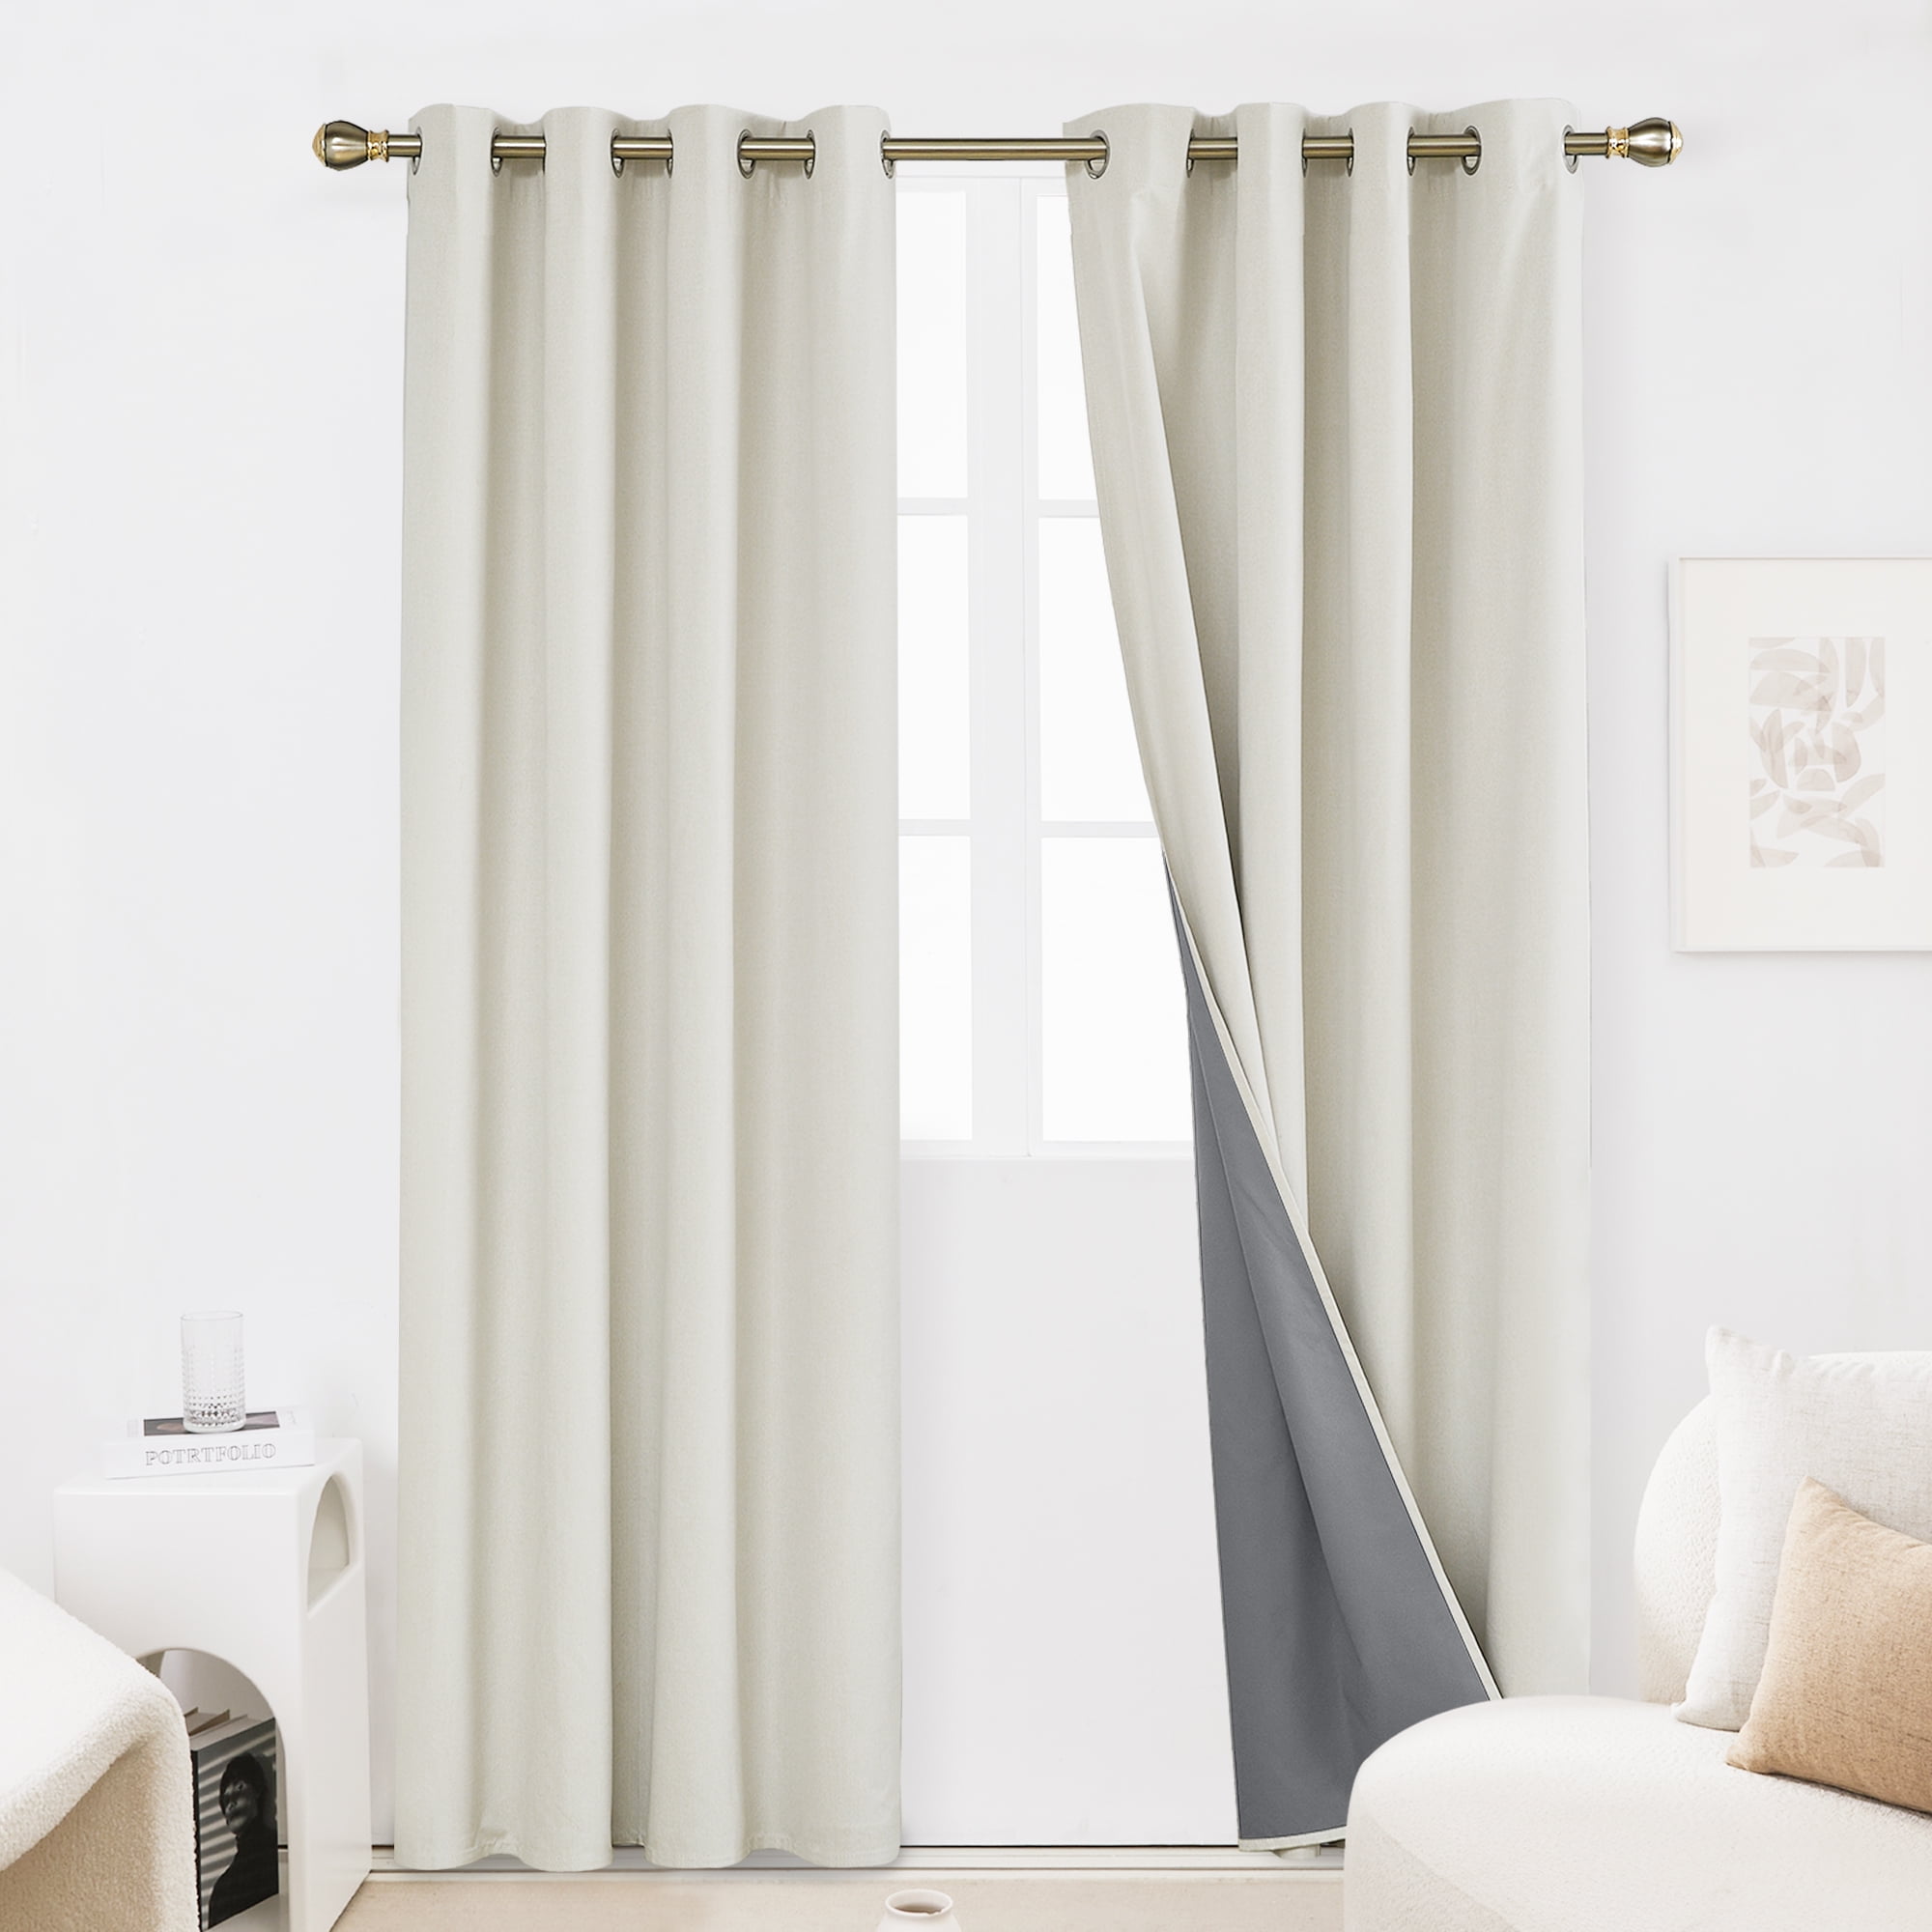 50m Cream Cotton Sateen Curtain Lining Premium Quality 